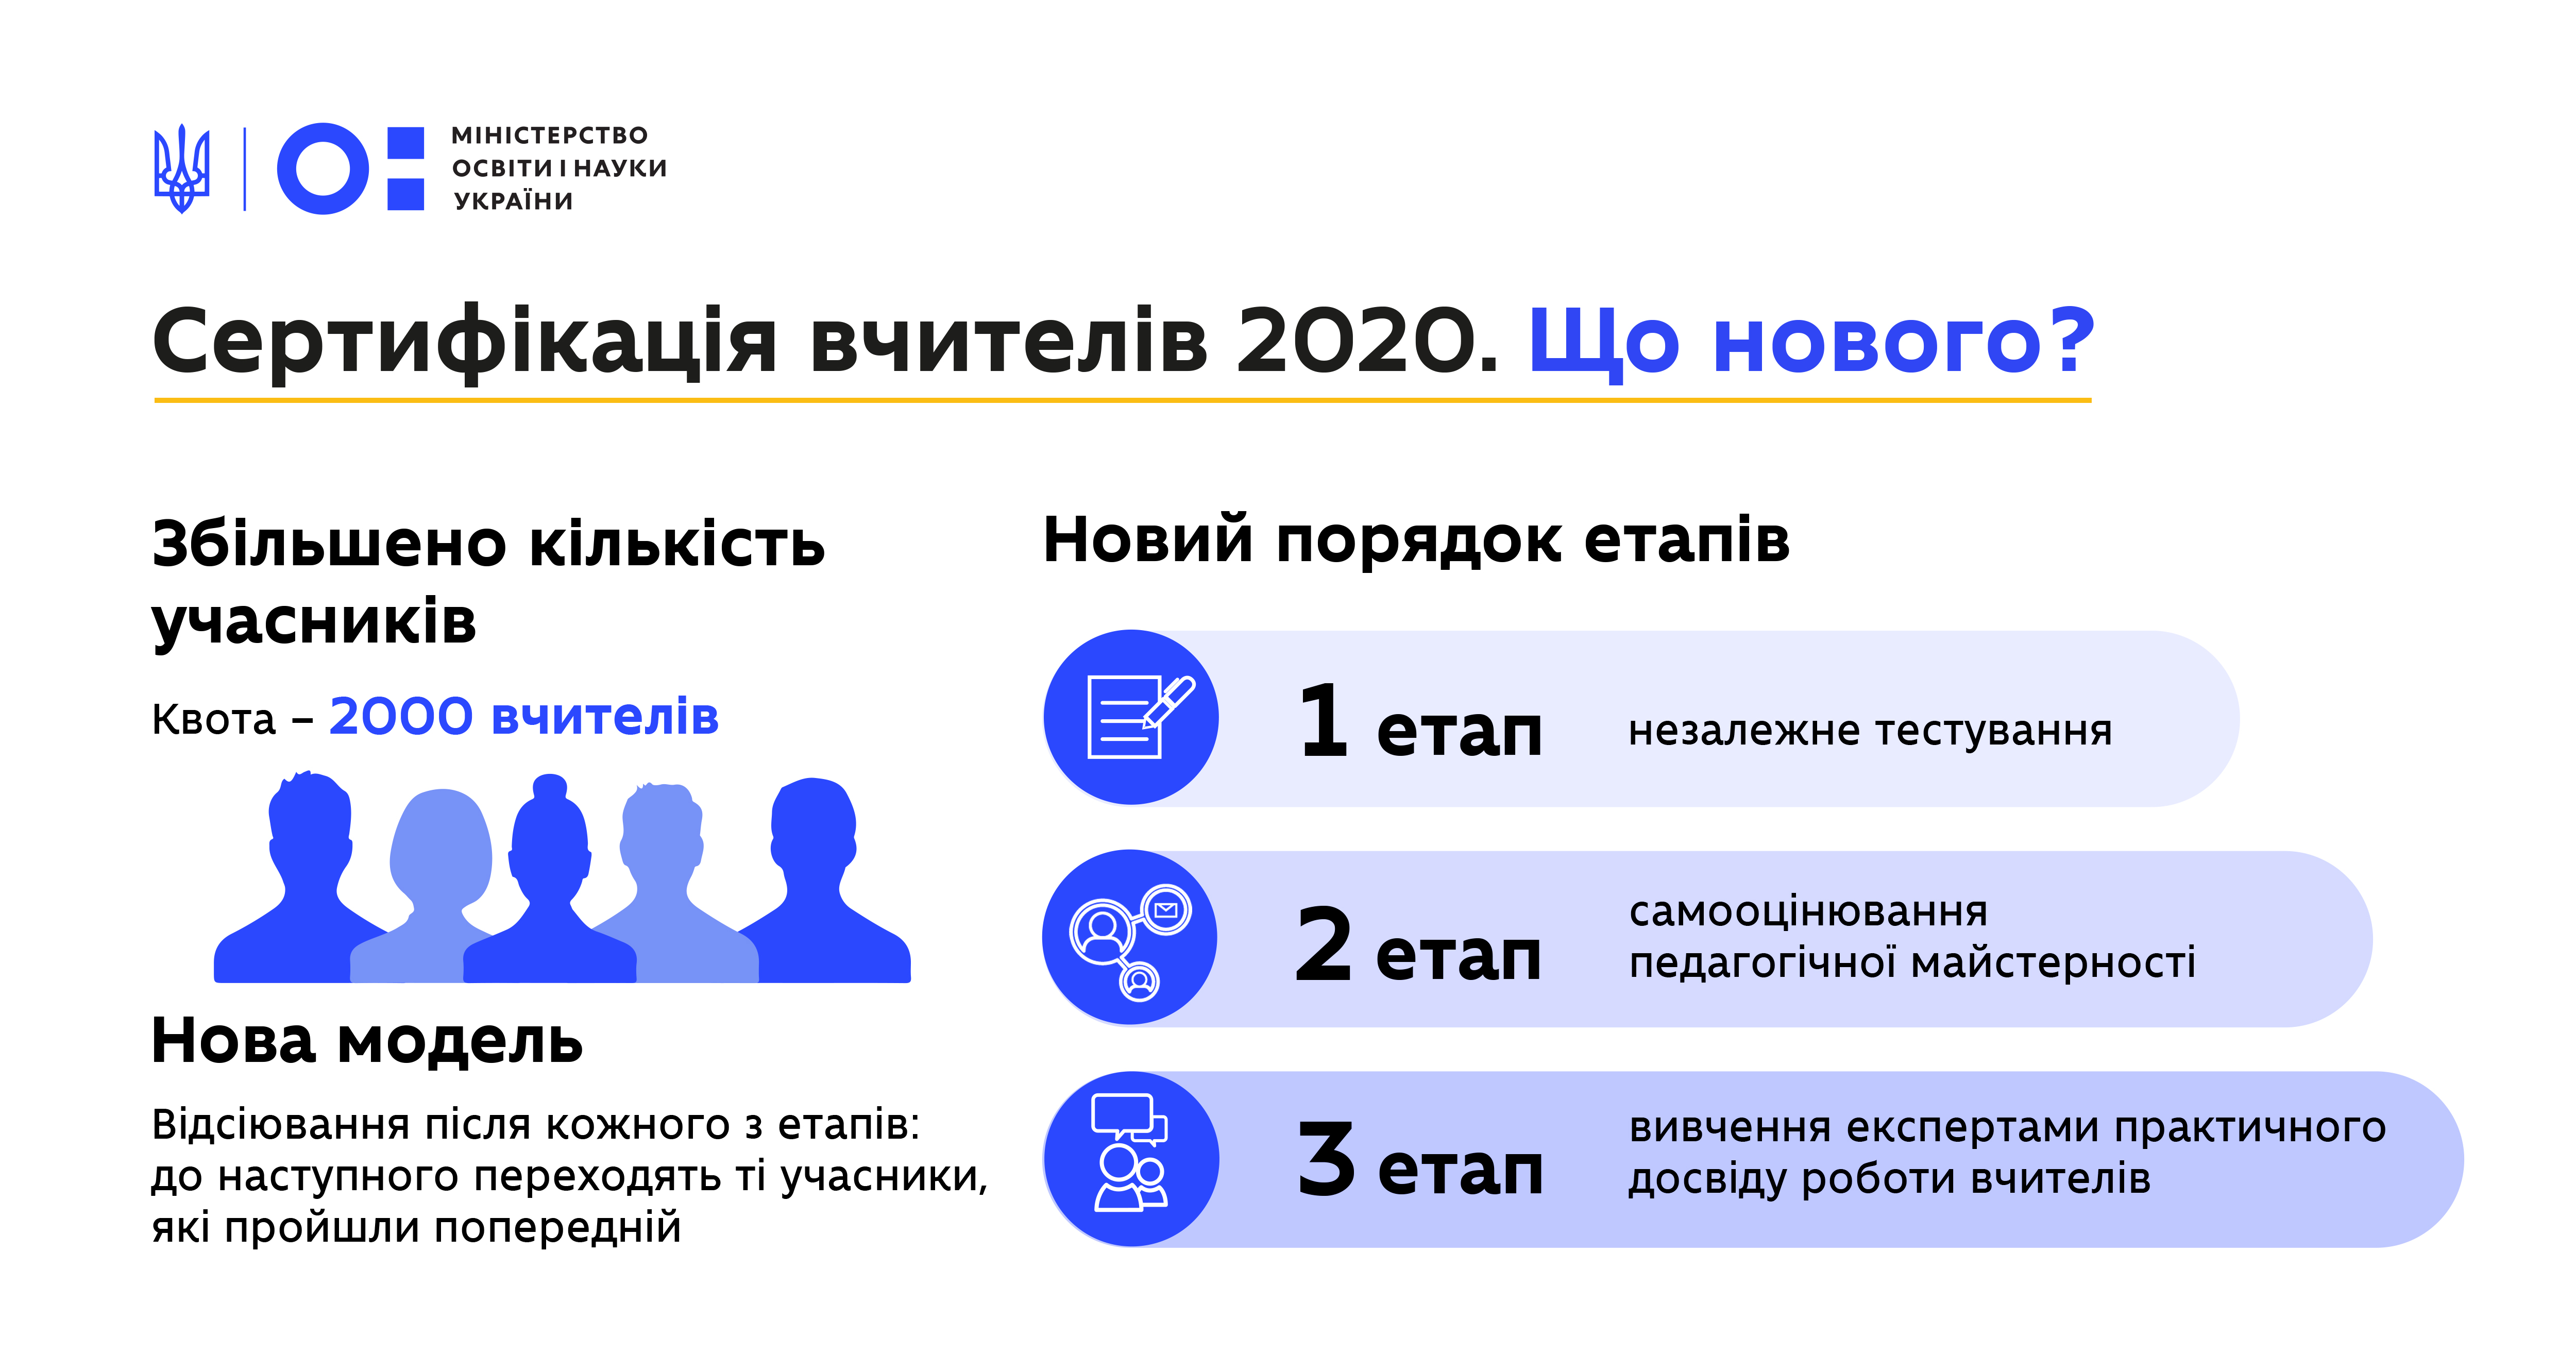 https://mon.gov.ua/ua/news/reyestraciya-na-sertifikaciyu-vchiteliv-2020-roku-startuye-15-sichnya